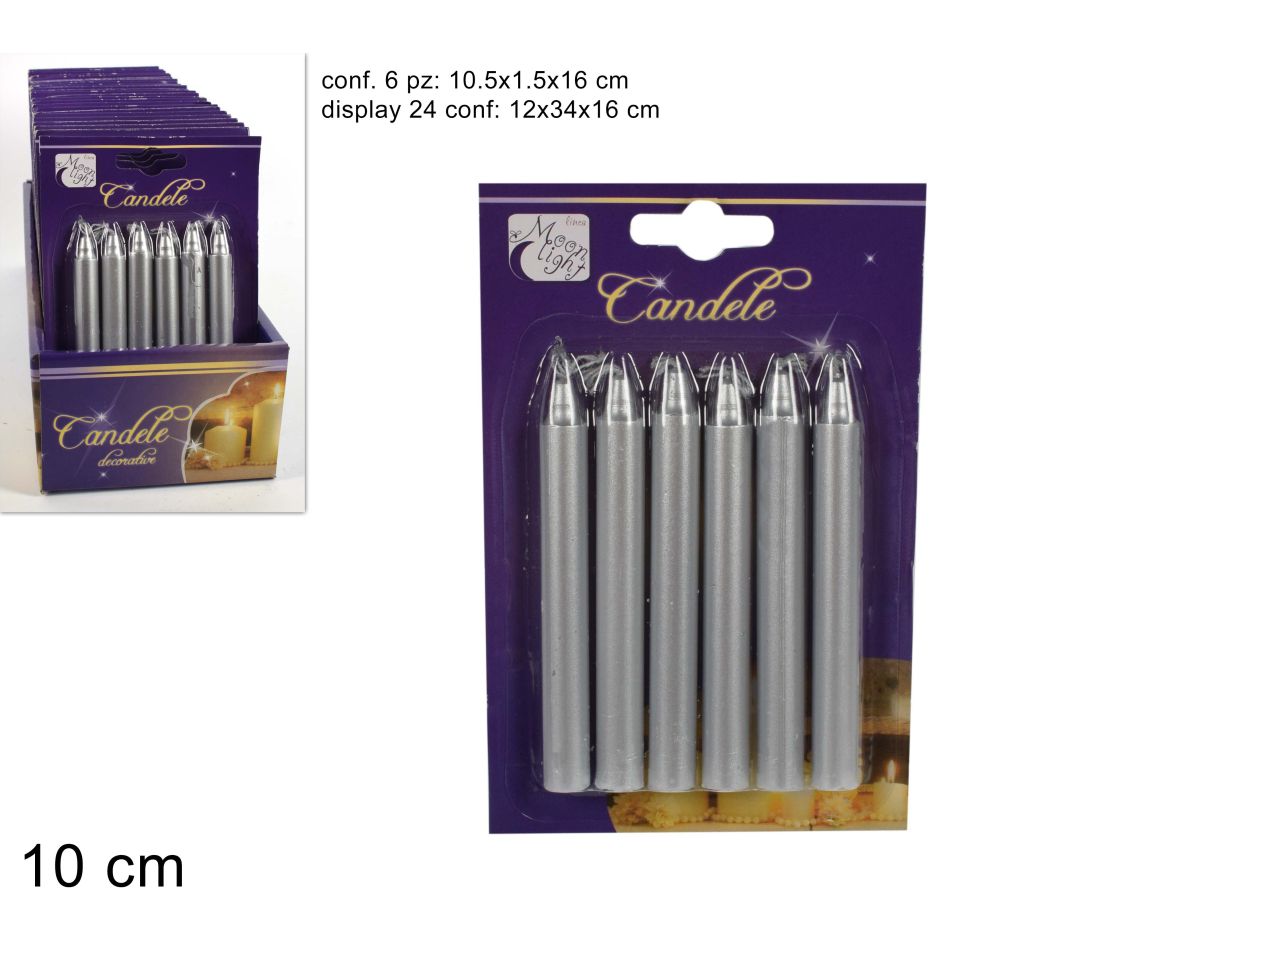 Candele mini metallizzate - la confezione comprende 6 candele in blister